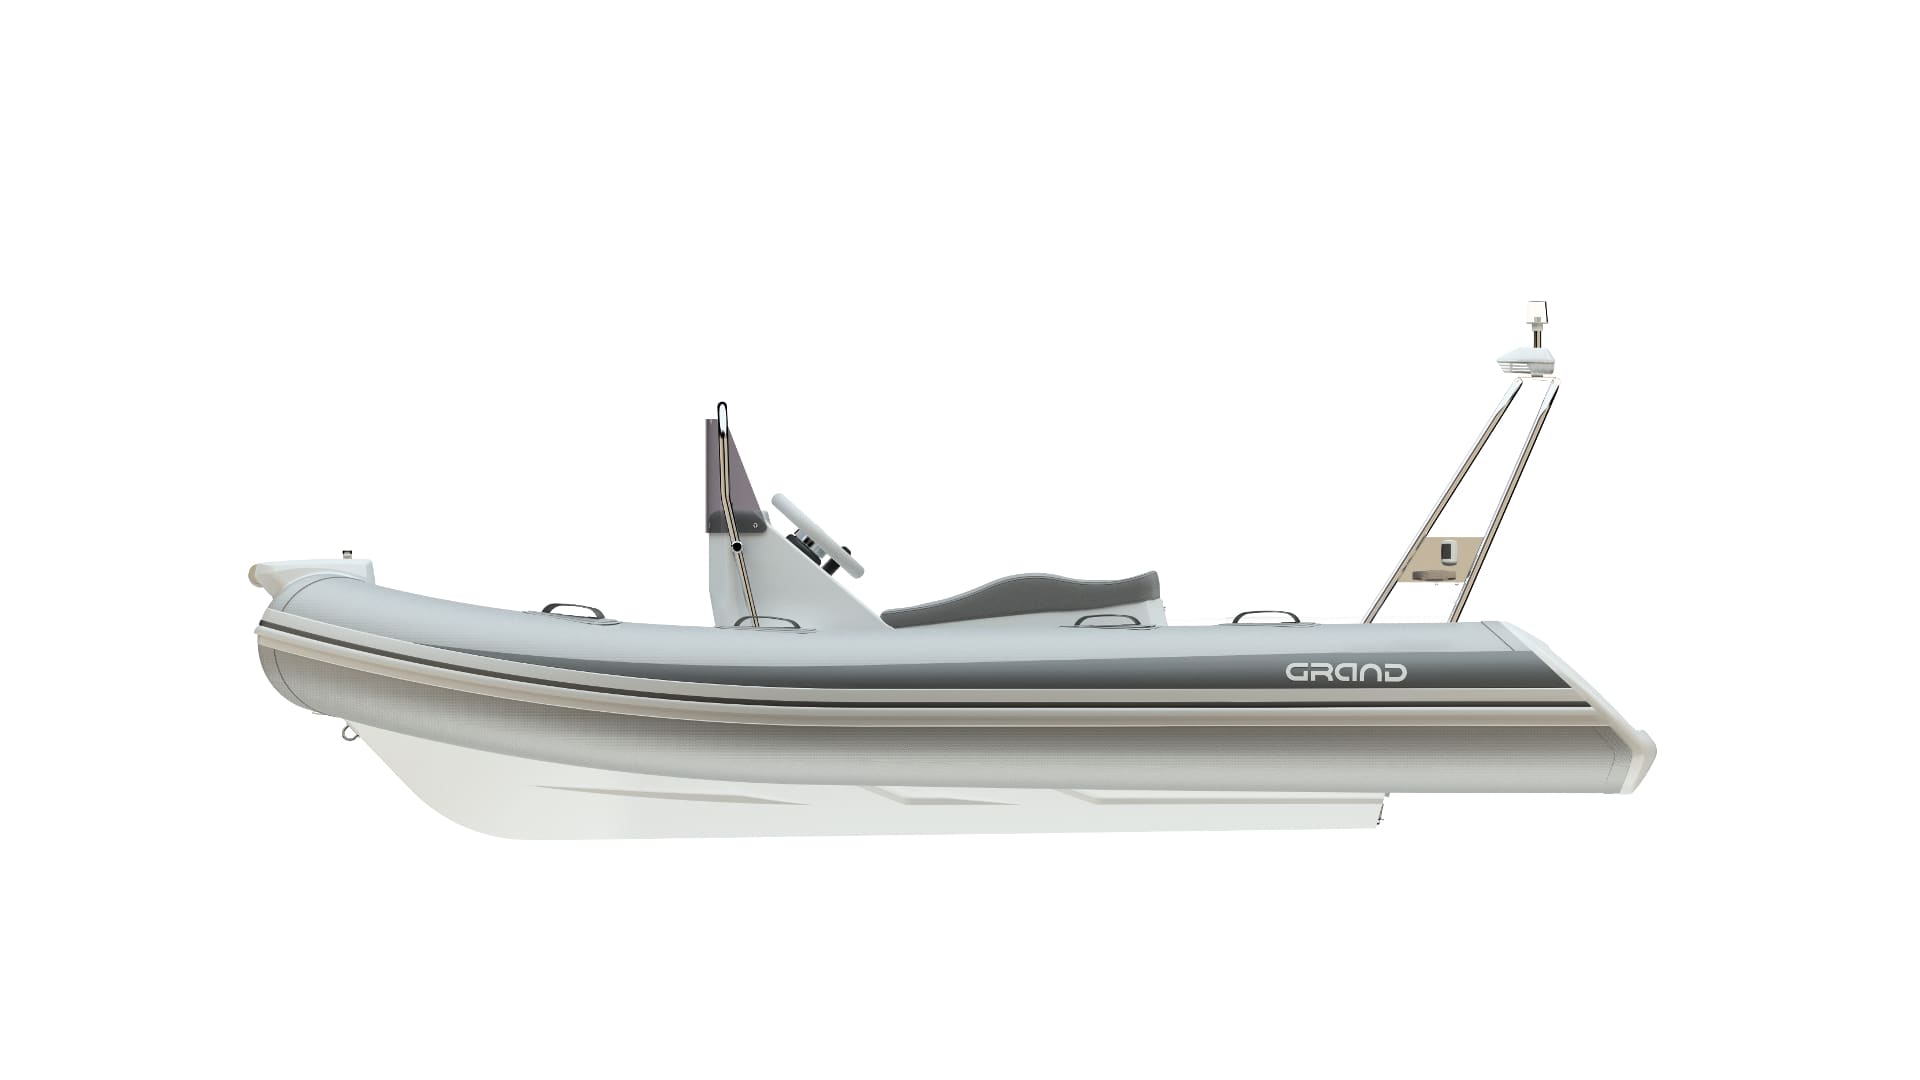 Надувная лодка с жестким дном GRAND Silver Line S370NS, Надувная лодка GRAND Silver Line S370NS, GRAND Silver Line S370NSF, GRAND Silver Line S370NS, GRAND S370NSF, GRAND S370NS, GRAND S370, Надувная лодка GRAND, Надувная лодка ГРАНД, Надувная лодка с жестким дном, RIB, Rigid Inflatable Boats